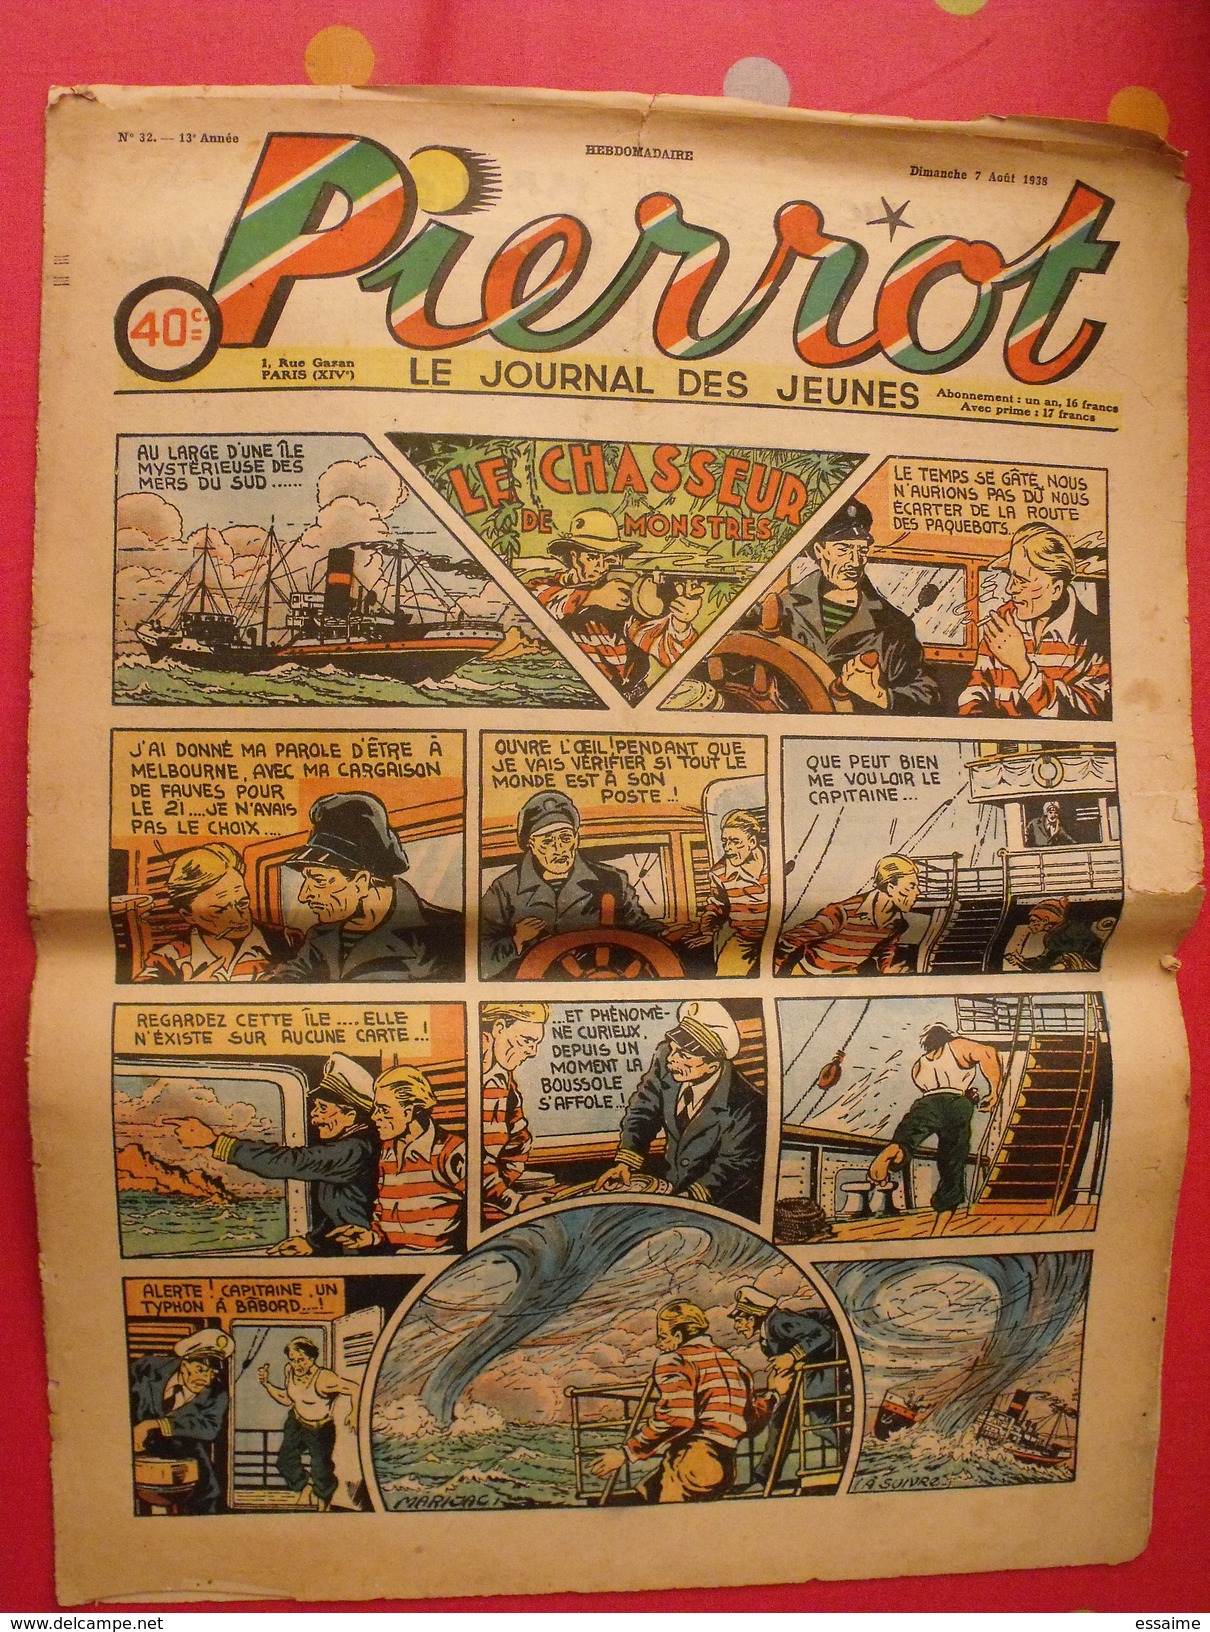 Pierrot  8 n° de 1938. le réveil des sioux par le rallic. ferraz liquois cuvilier marijac jeanjean aviation gervy